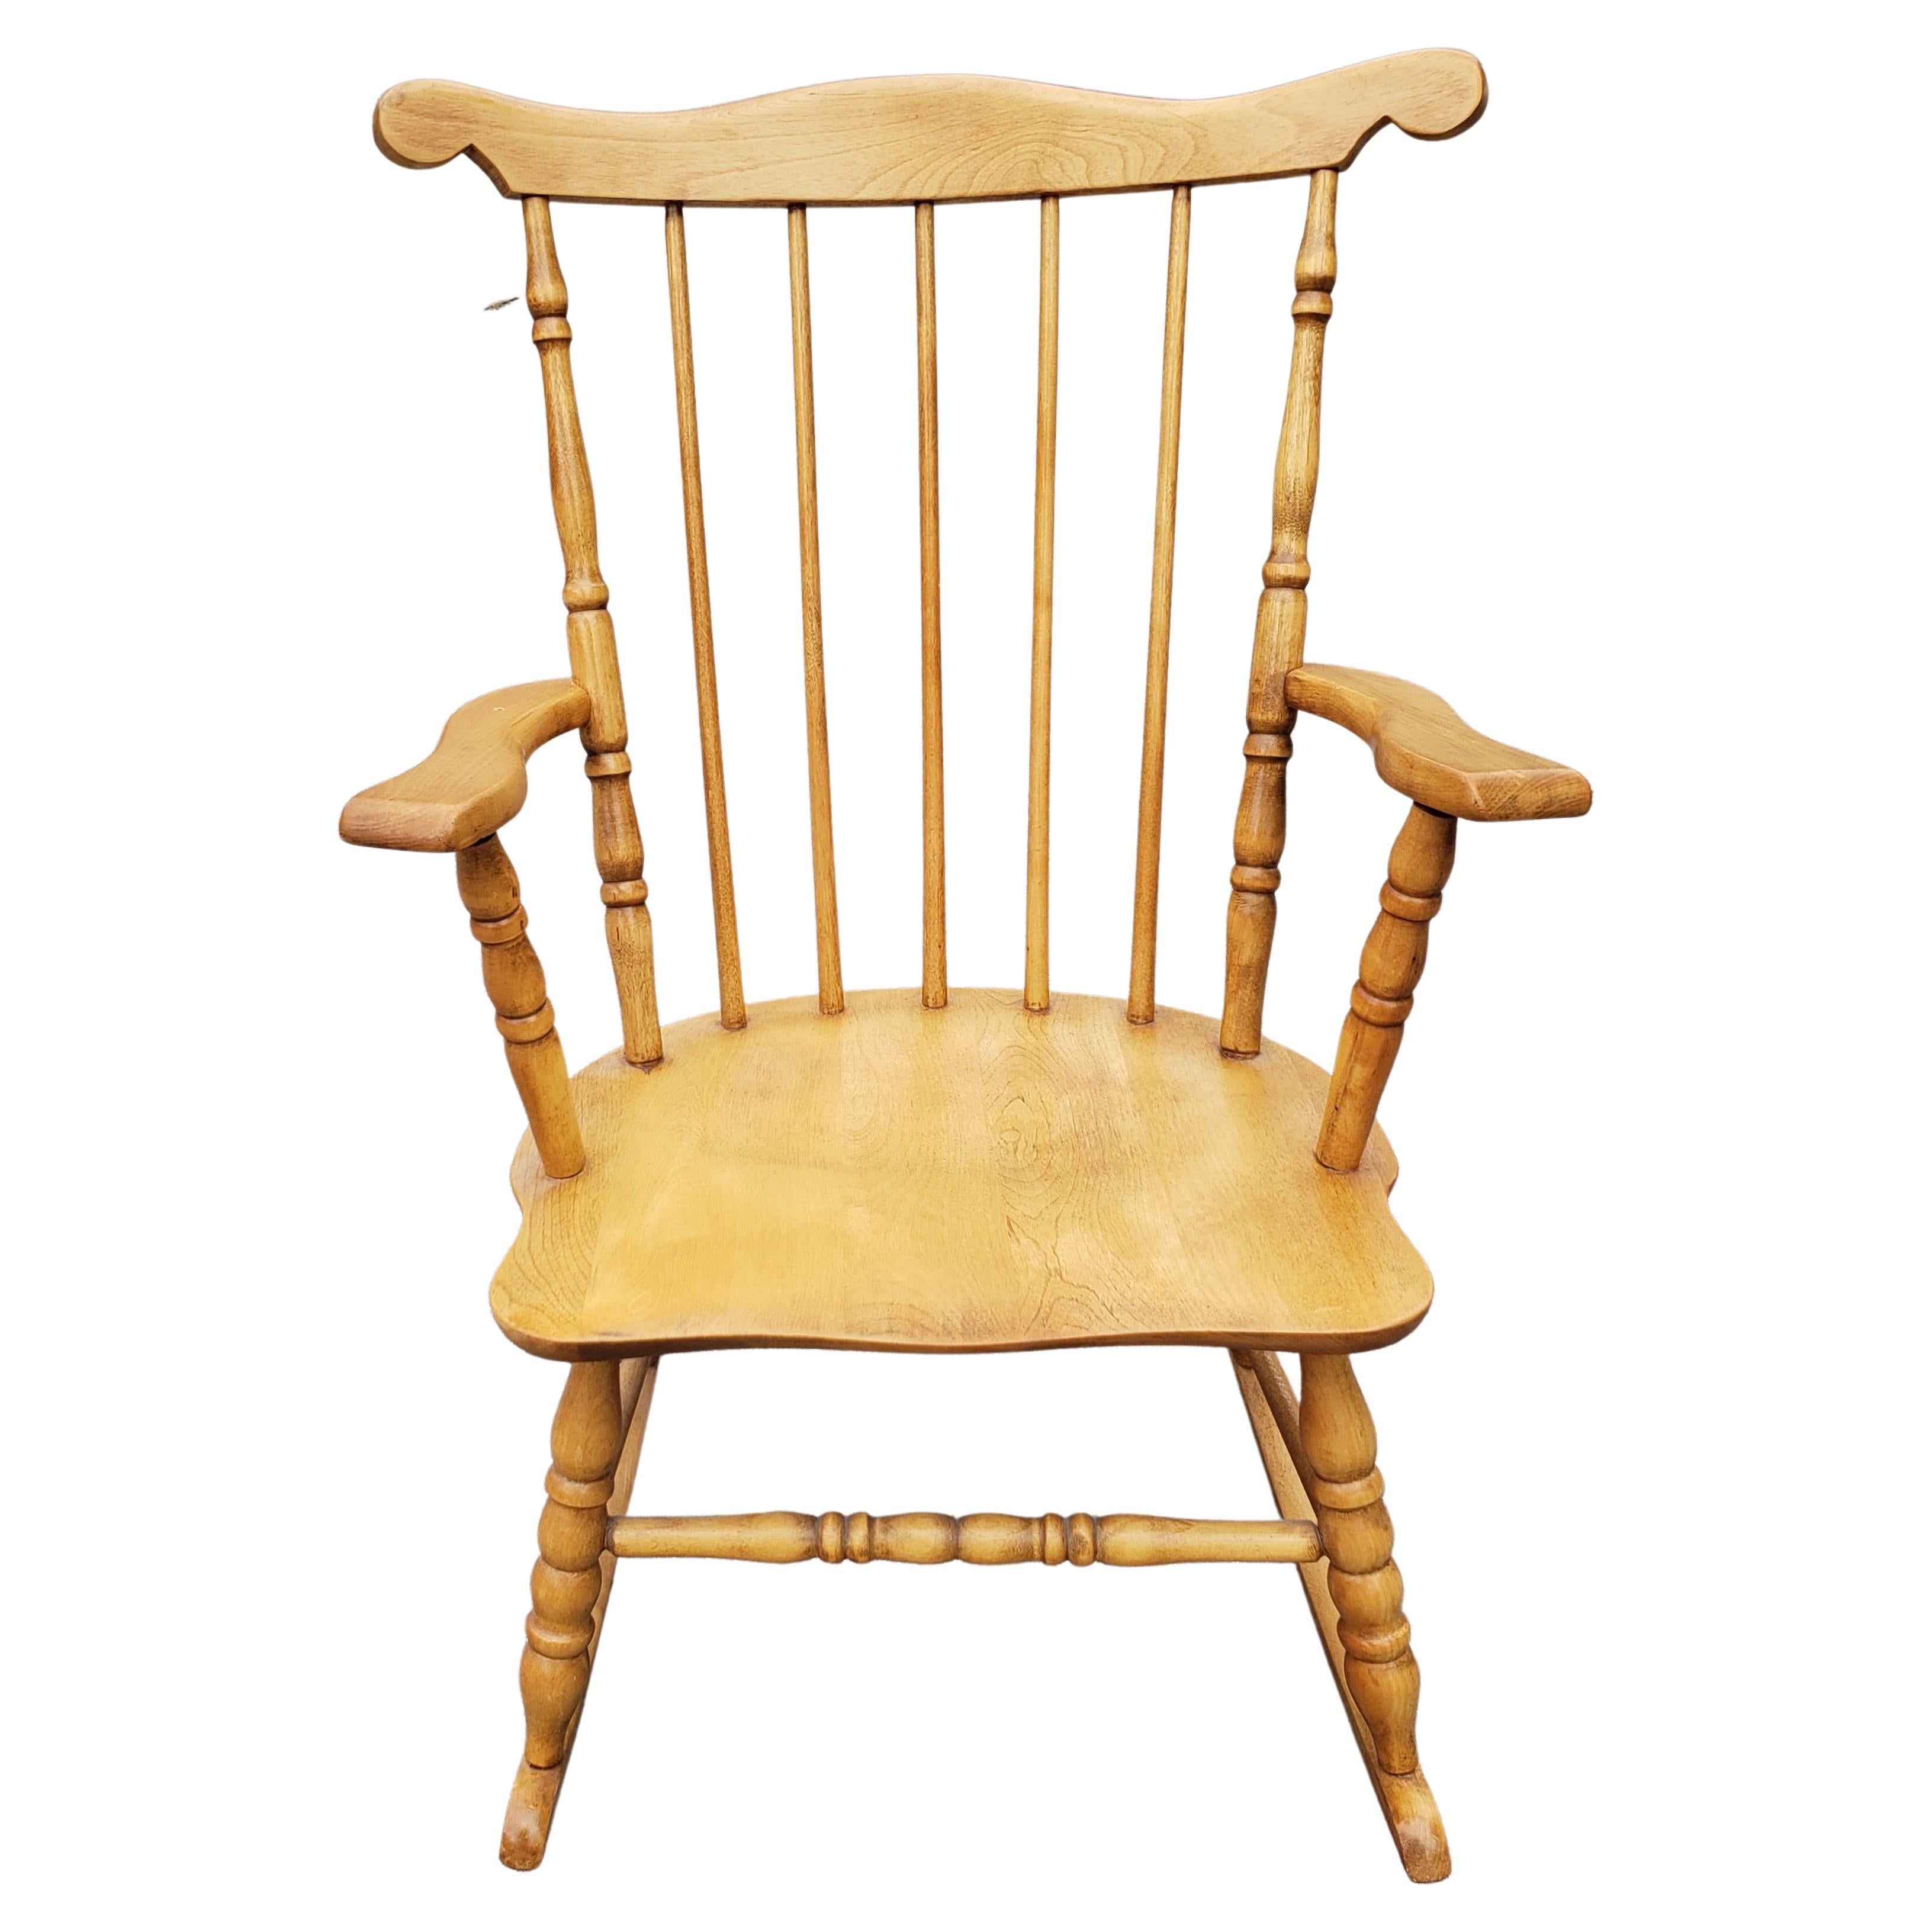 Élégante chaise à bascule classique de style Windsor pour les grands enfants. Coussin disponible en option. 
Excellent état vintage.
Mesure 21.75W aux bras, 22.75 